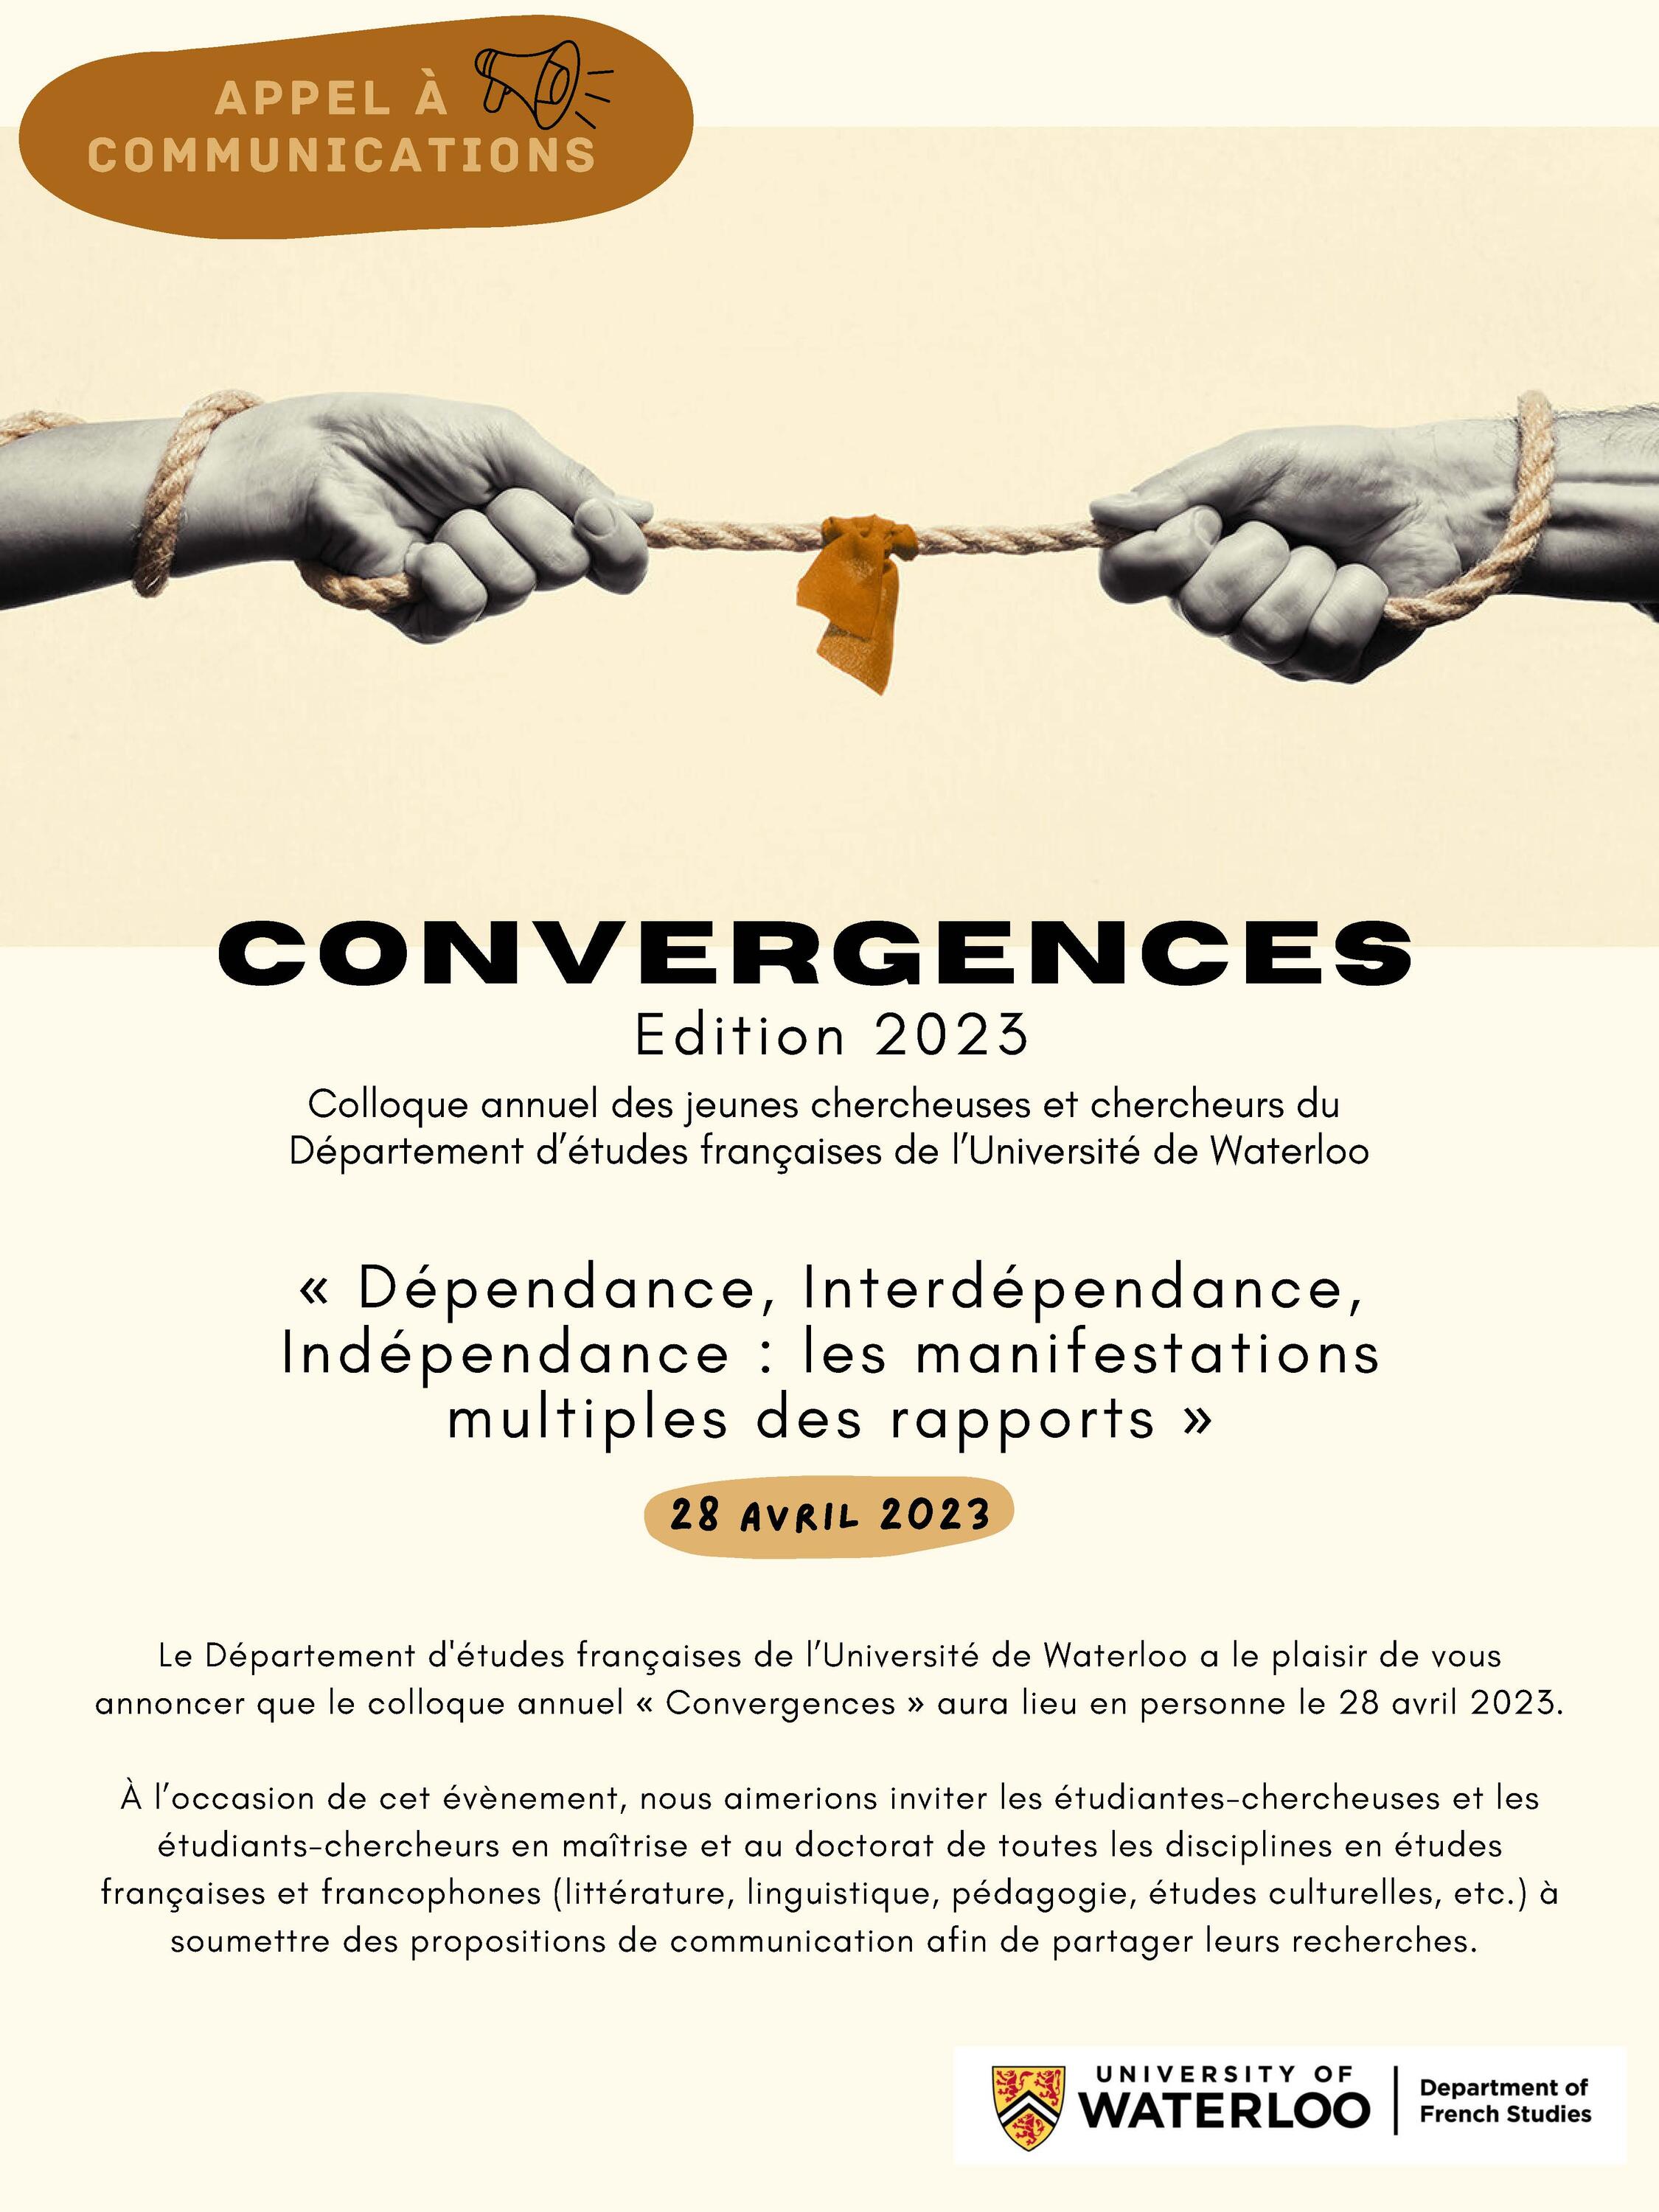 Convergences (2023) appel à communication